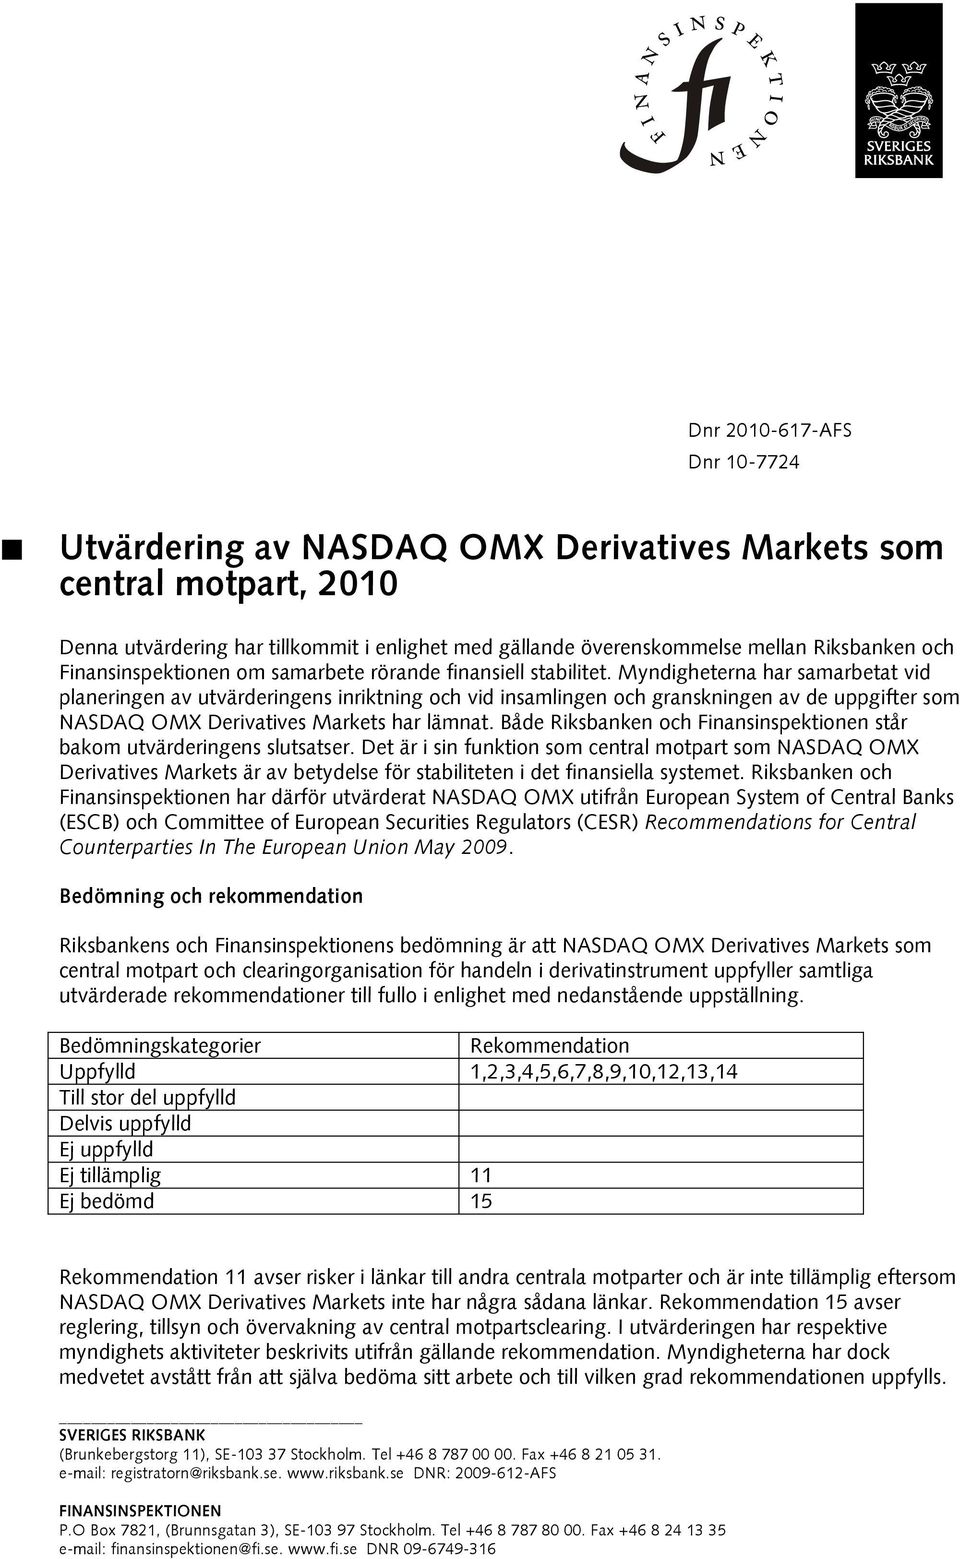 Myndigheterna har samarbetat vid planeringen av utvärderingens inriktning och vid insamlingen och granskningen av de uppgifter som NASDAQ OMX Derivatives Markets har lämnat.